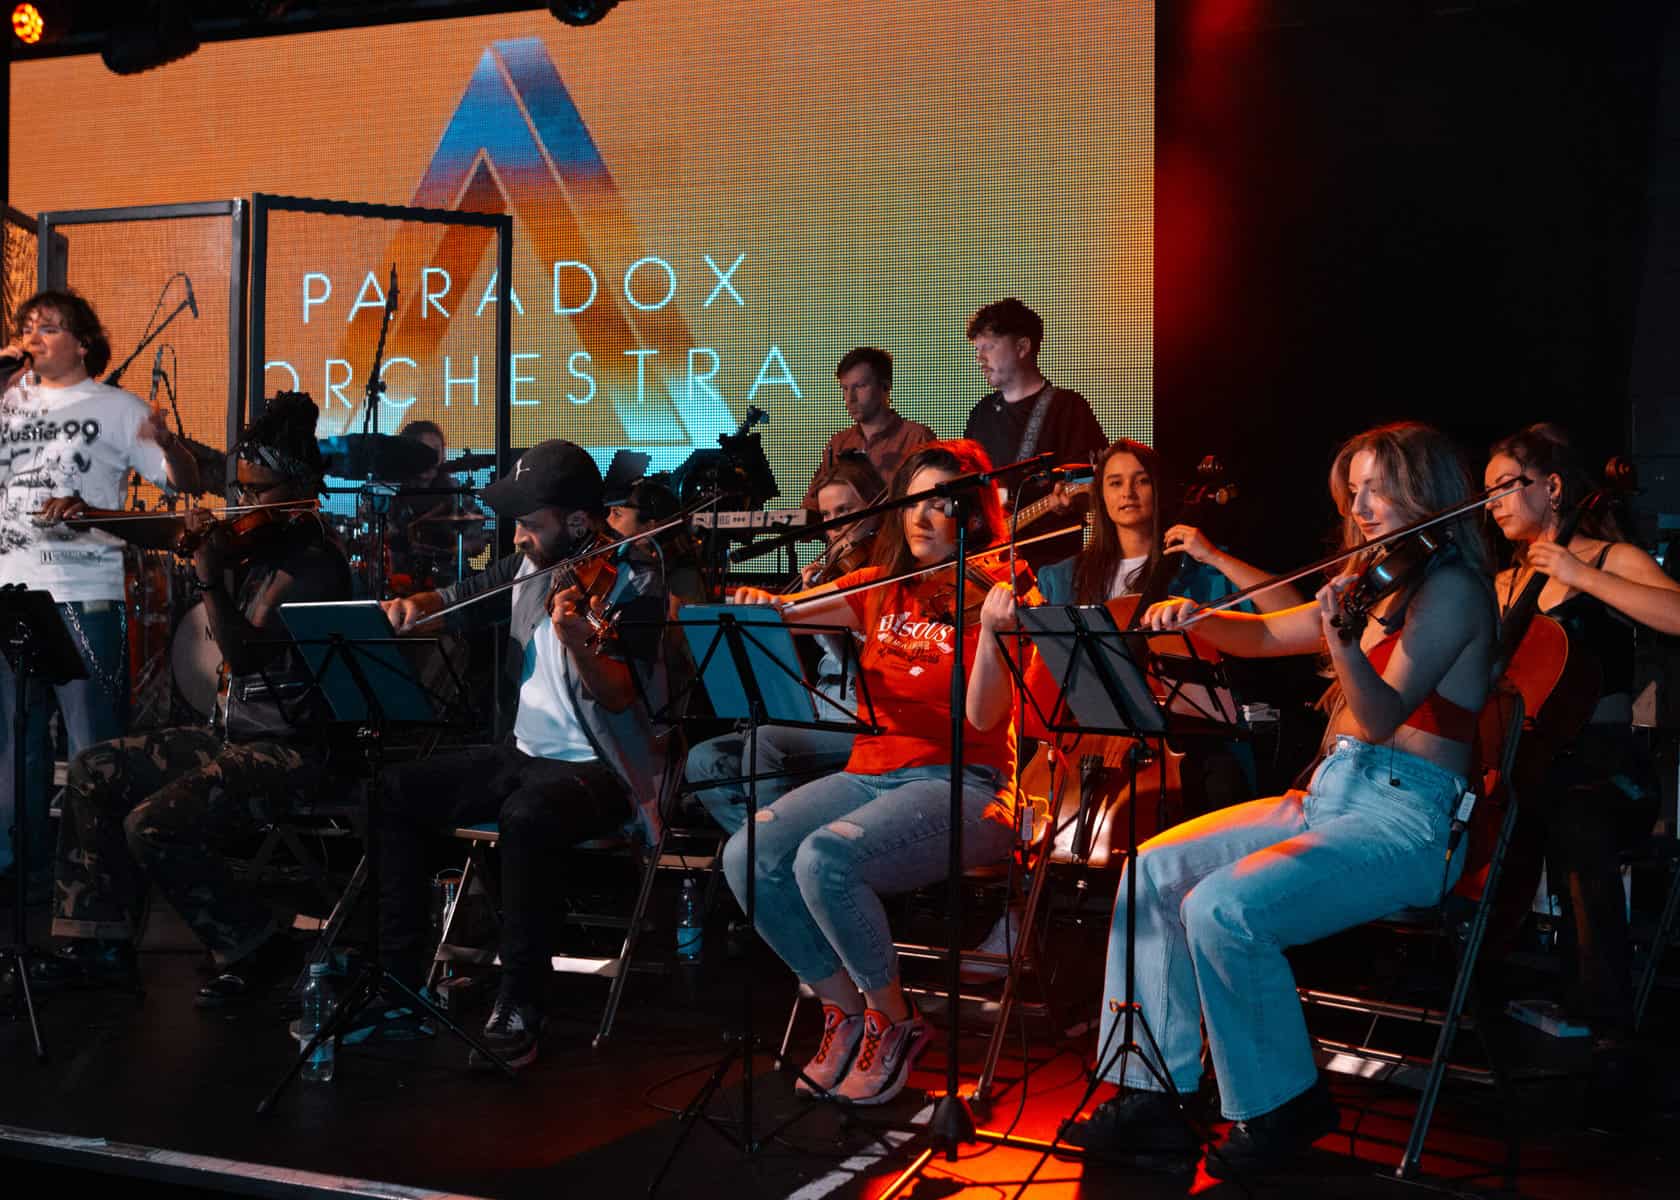 Paradox Orchestra